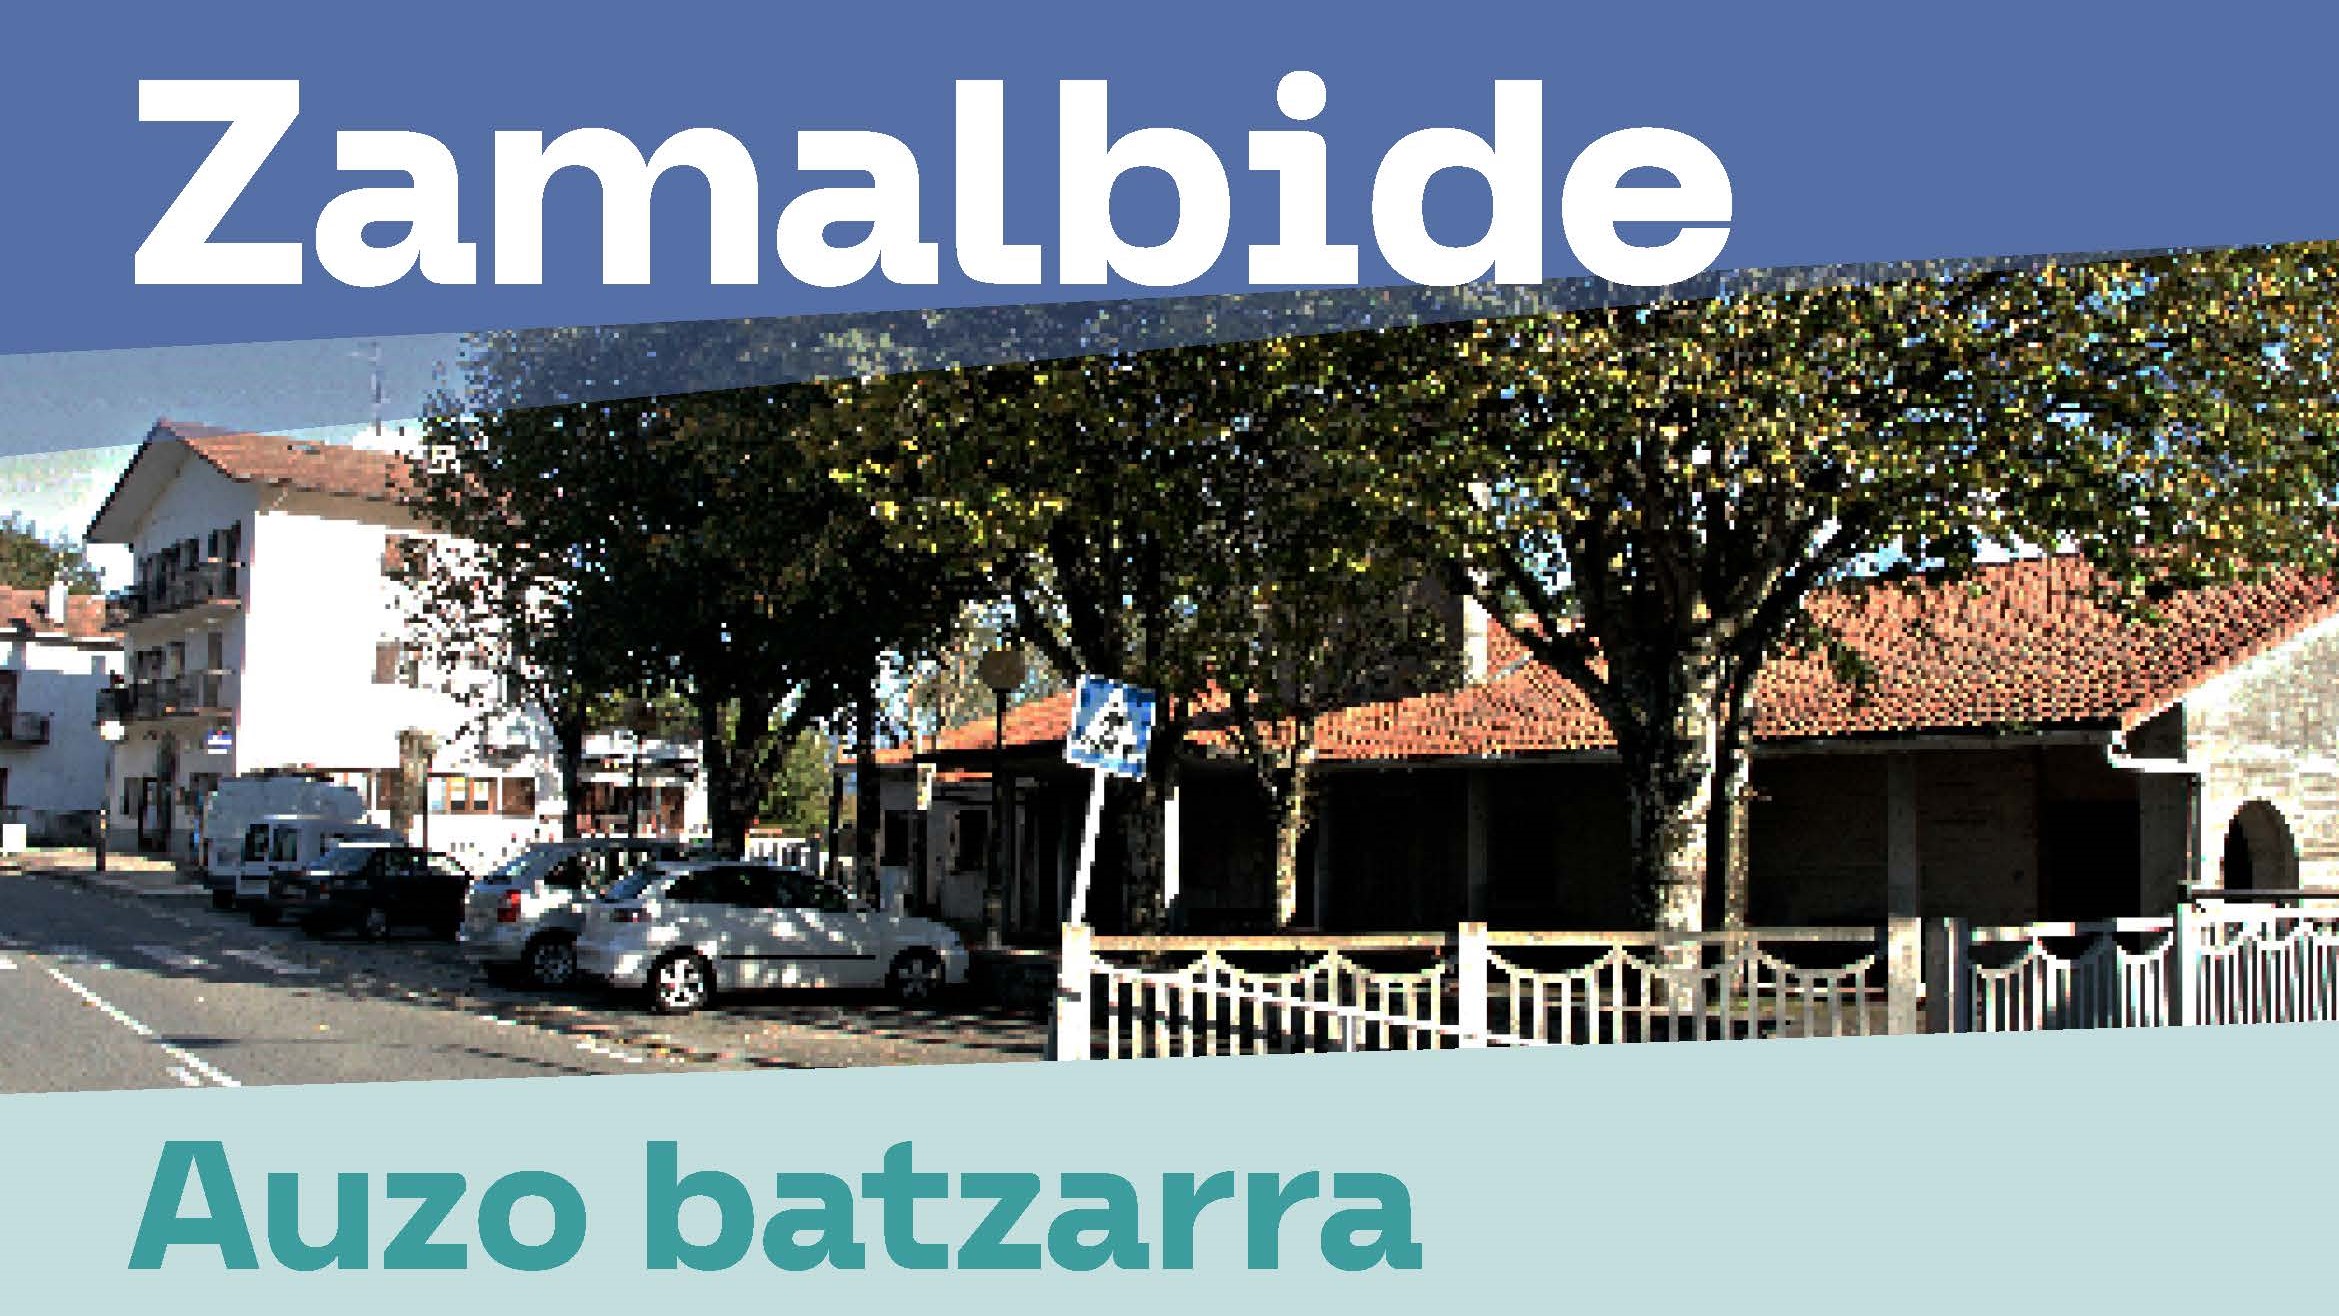 El miércoles tendrá lugar la Asamblea de Barrio de Zamalbide